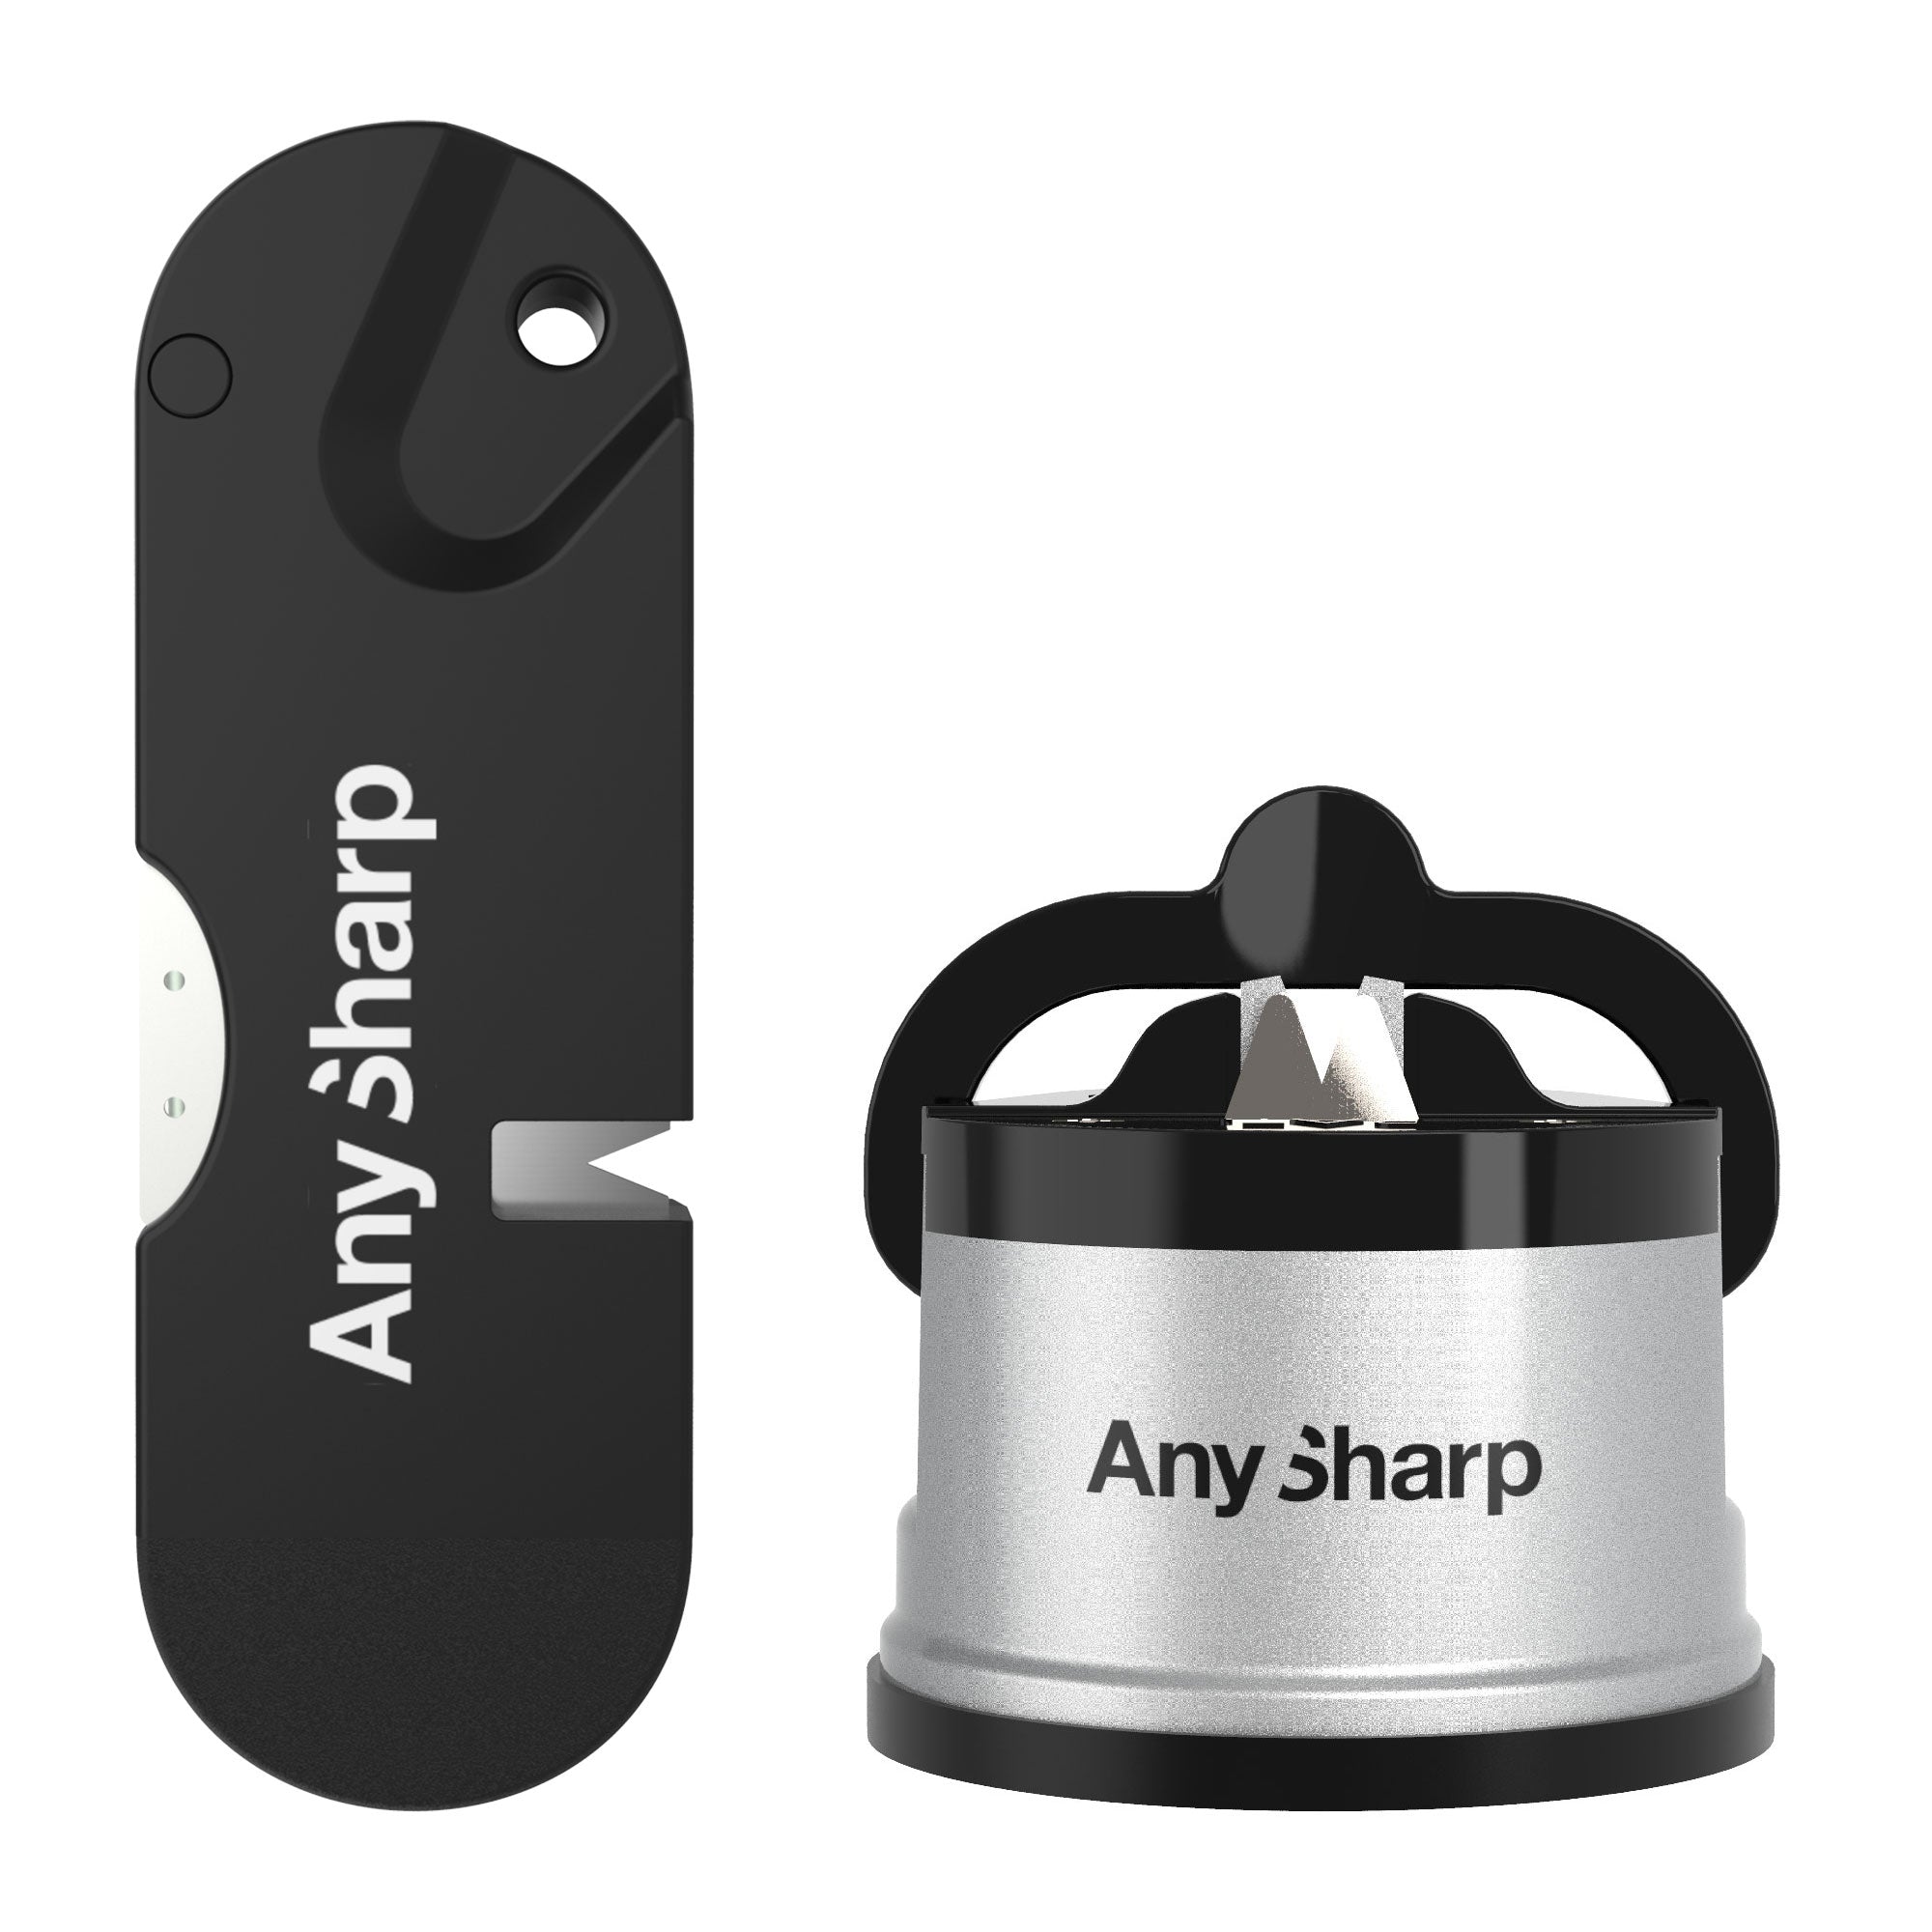 Pro knife sharpener, Wolfram - AnySharp